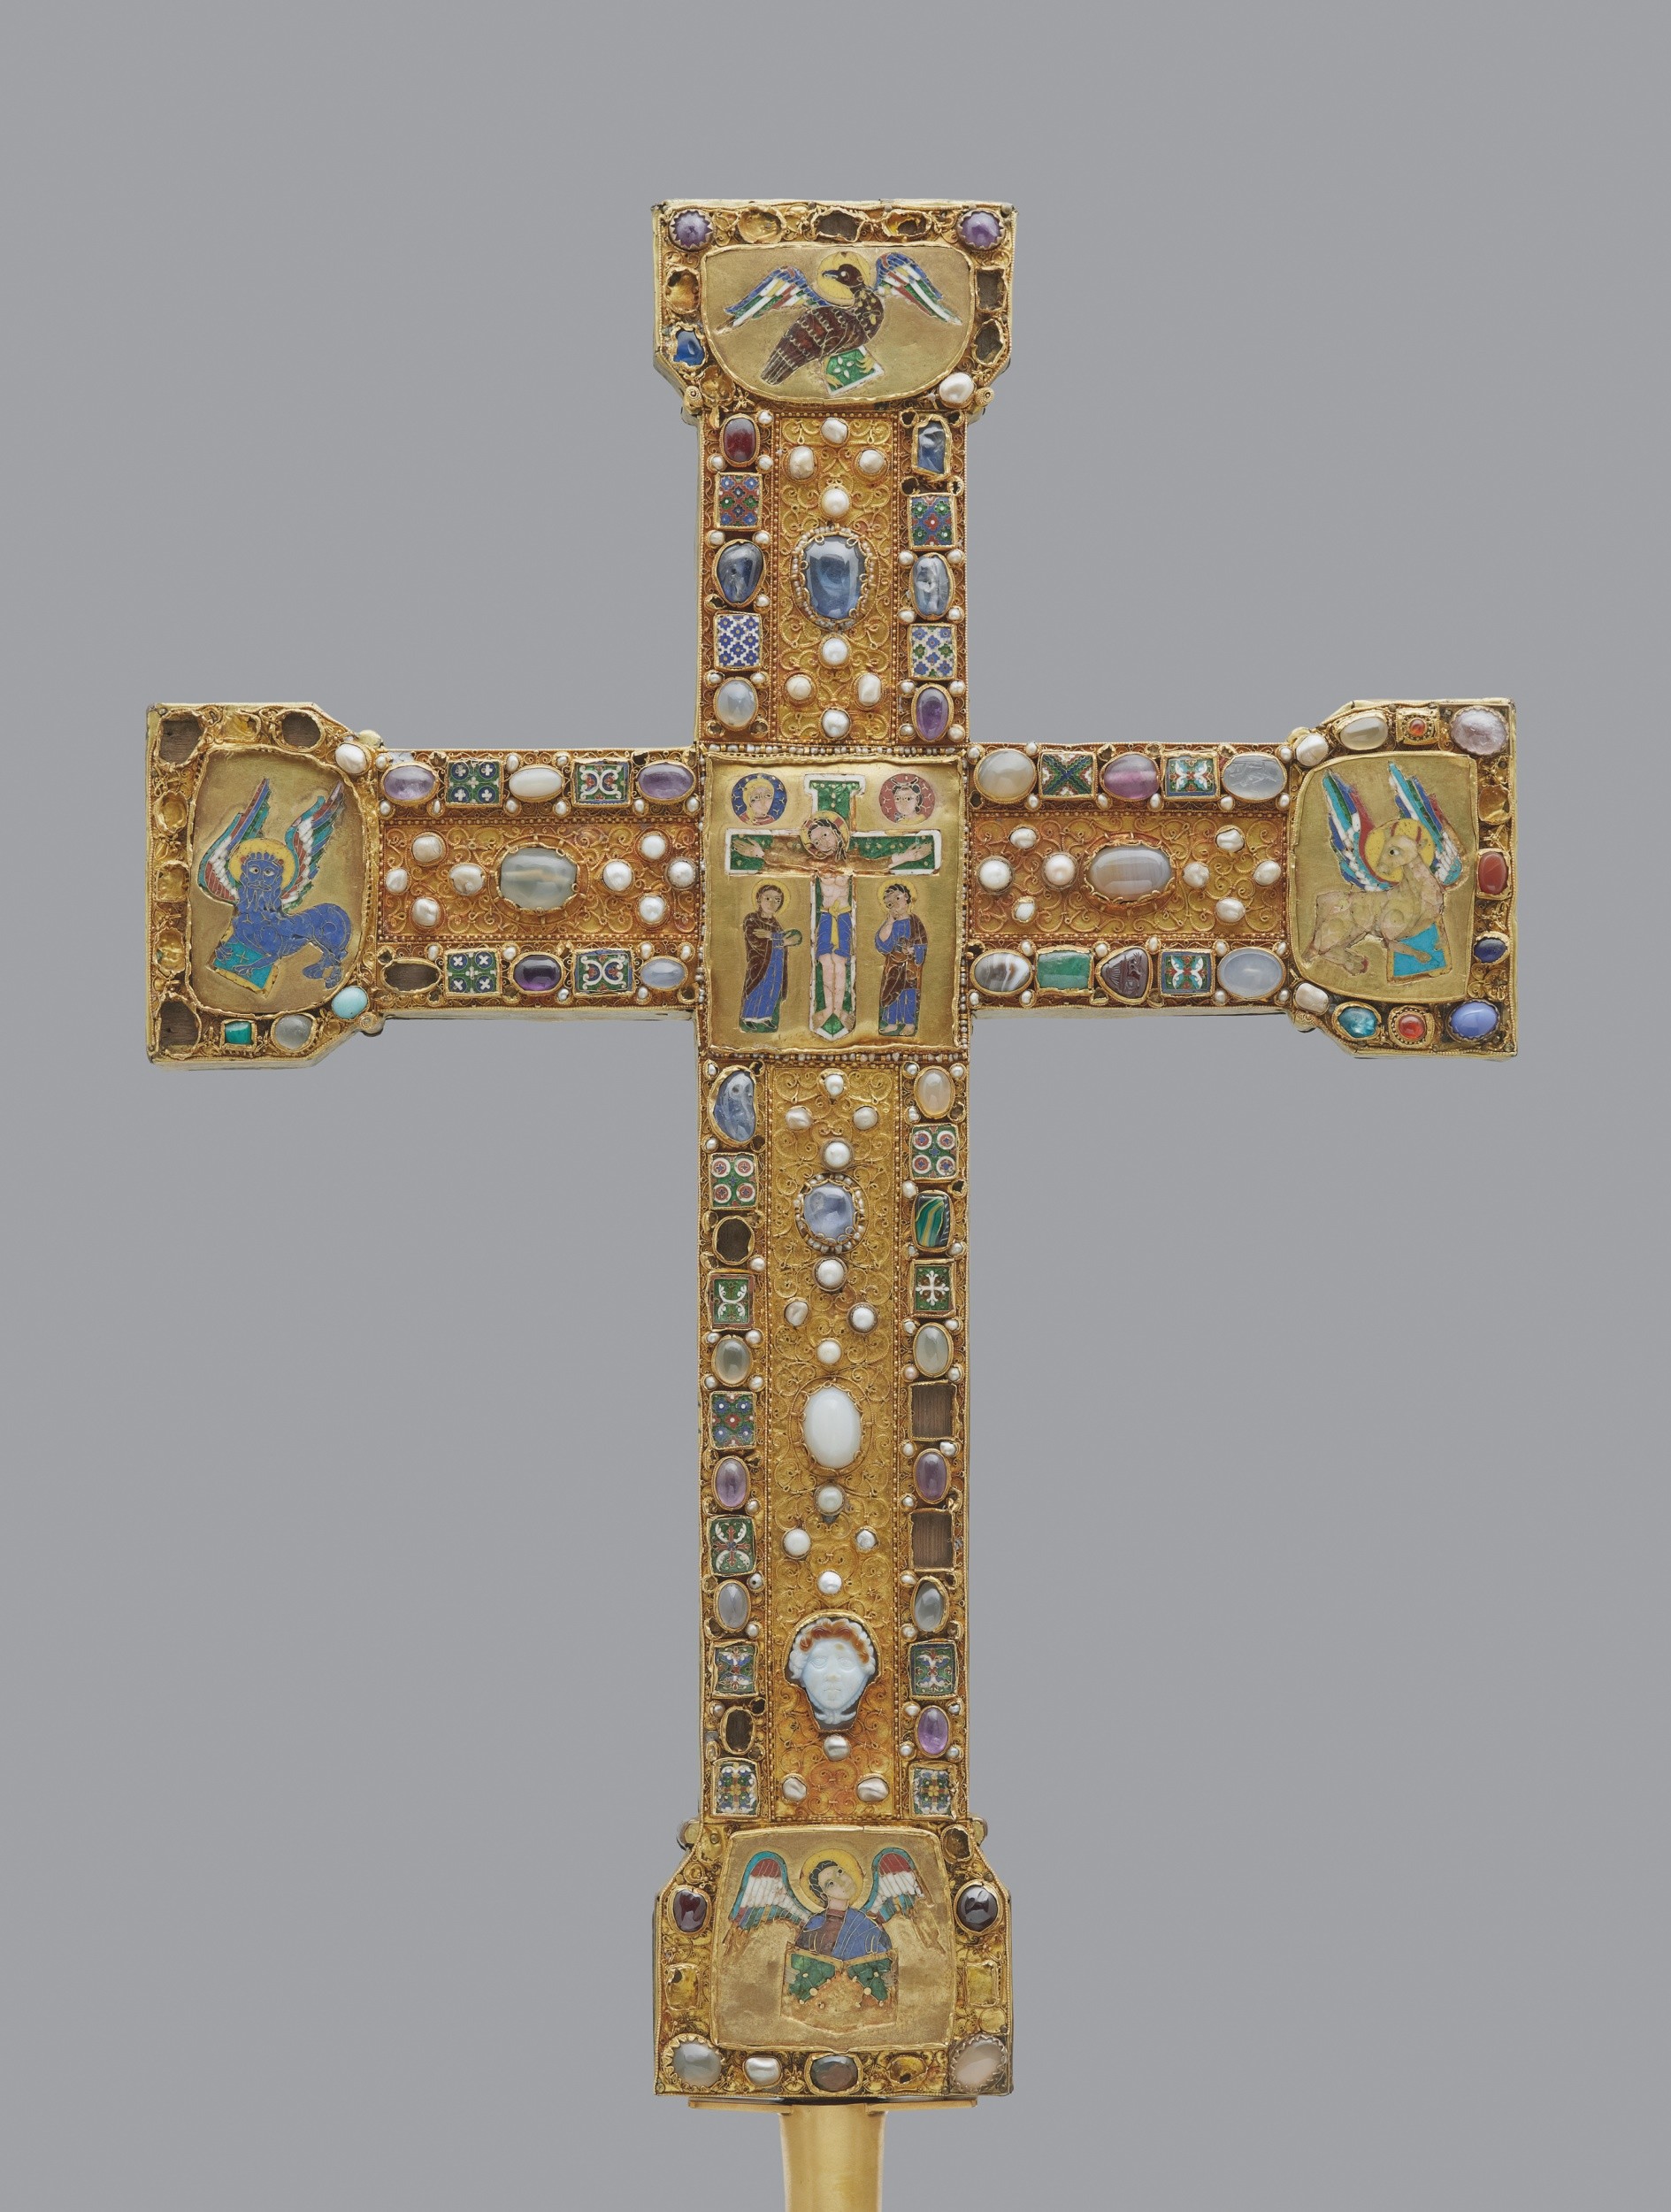 Heinrichs-Kreuz. 11. Jahrhundert. Berlin, Staatliche Museen, Kunstgewerbemuseum